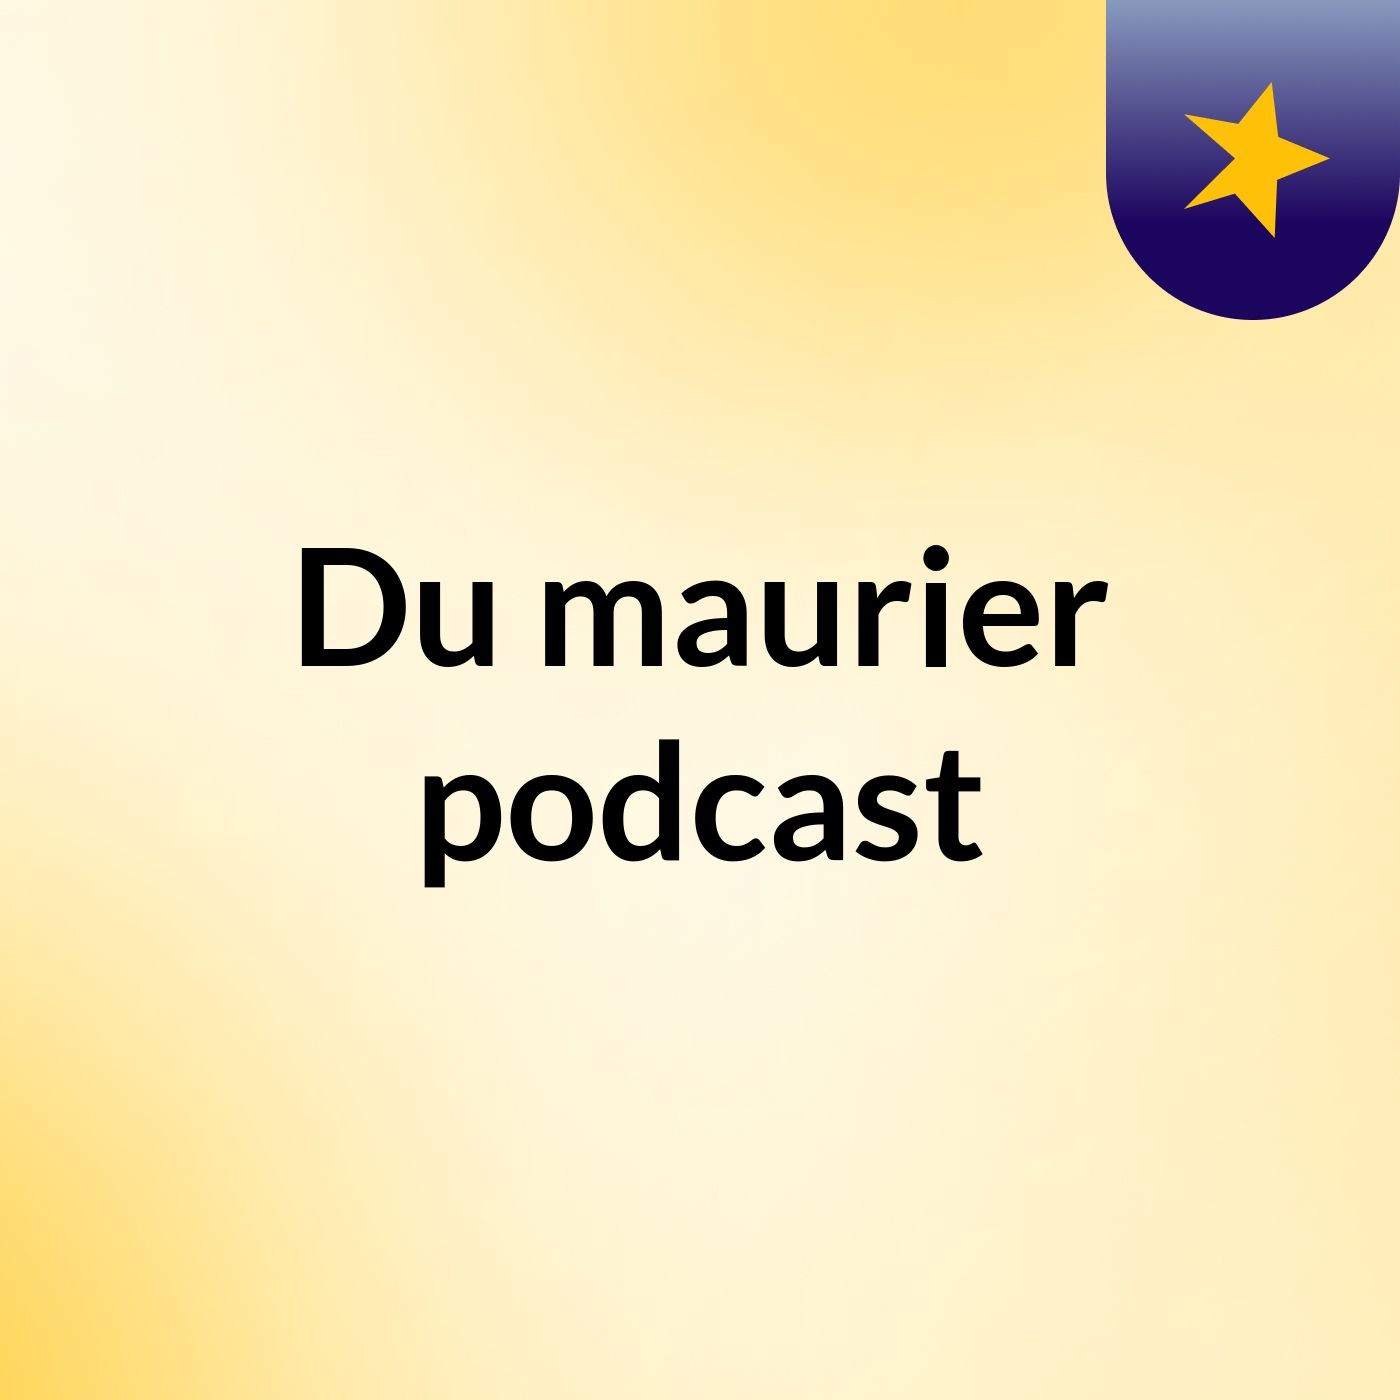 Du'maurier podcast